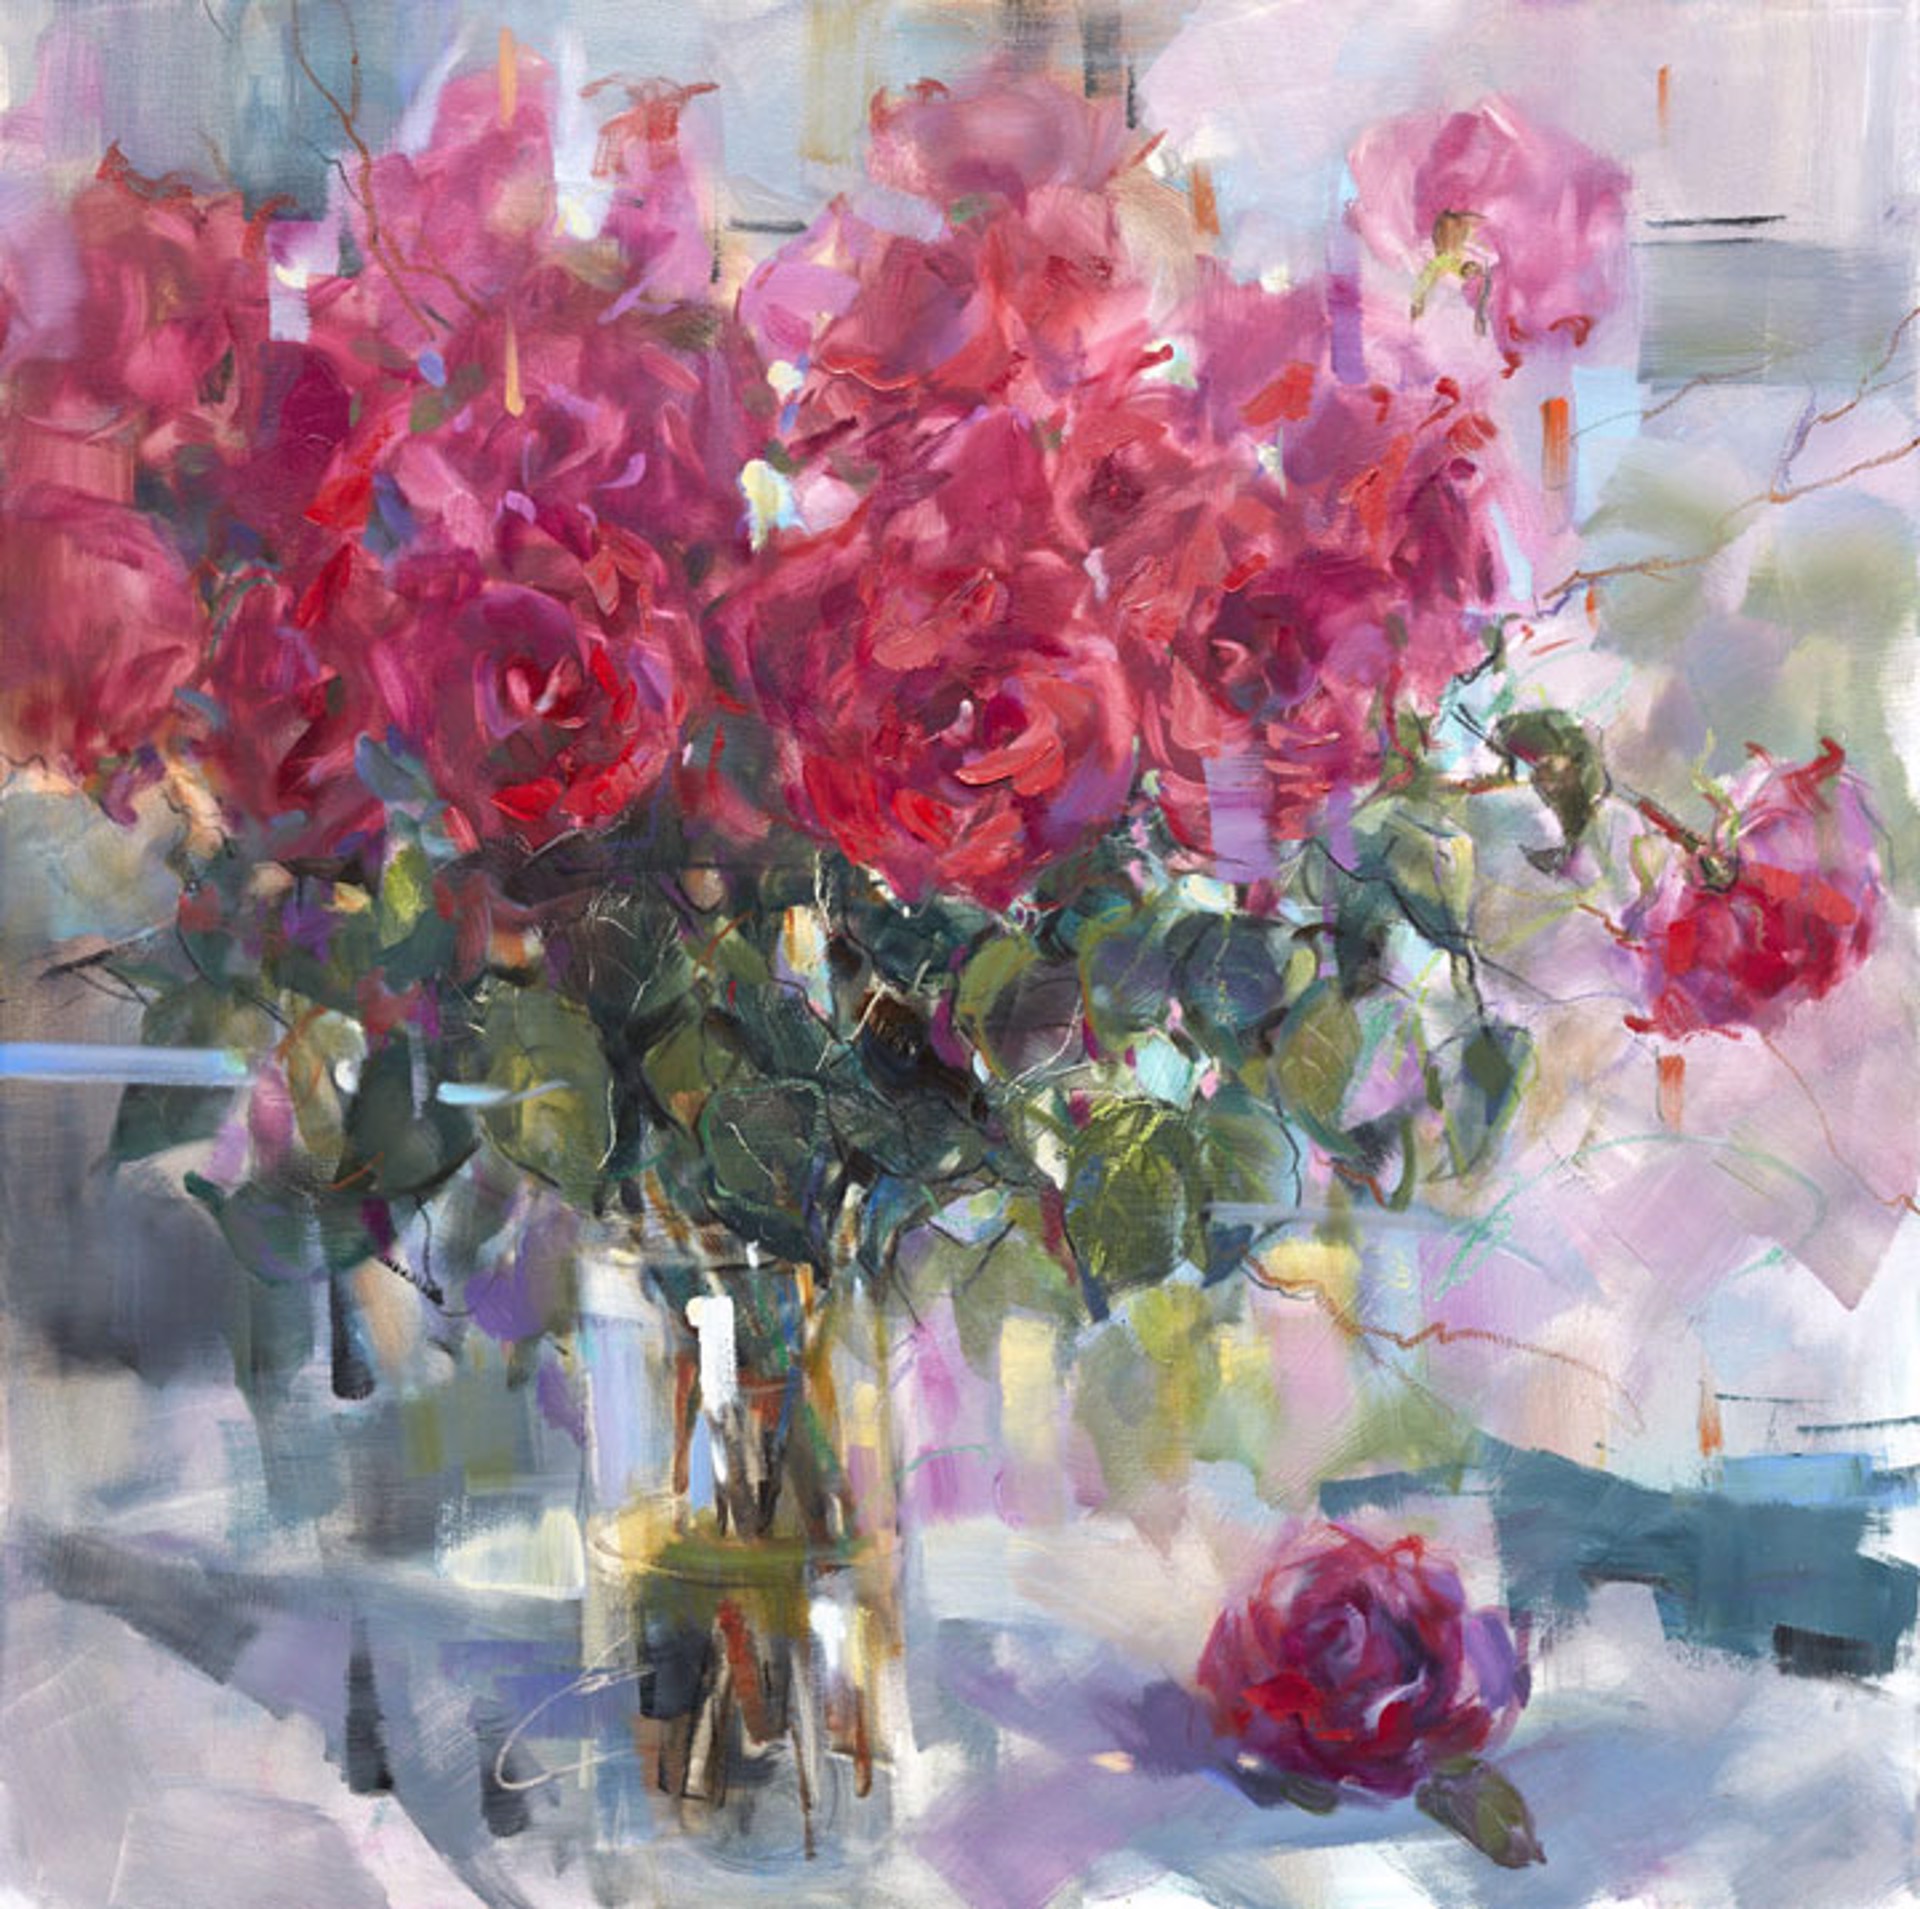 "Bouquet of Roses" by Anna Razumovskaya